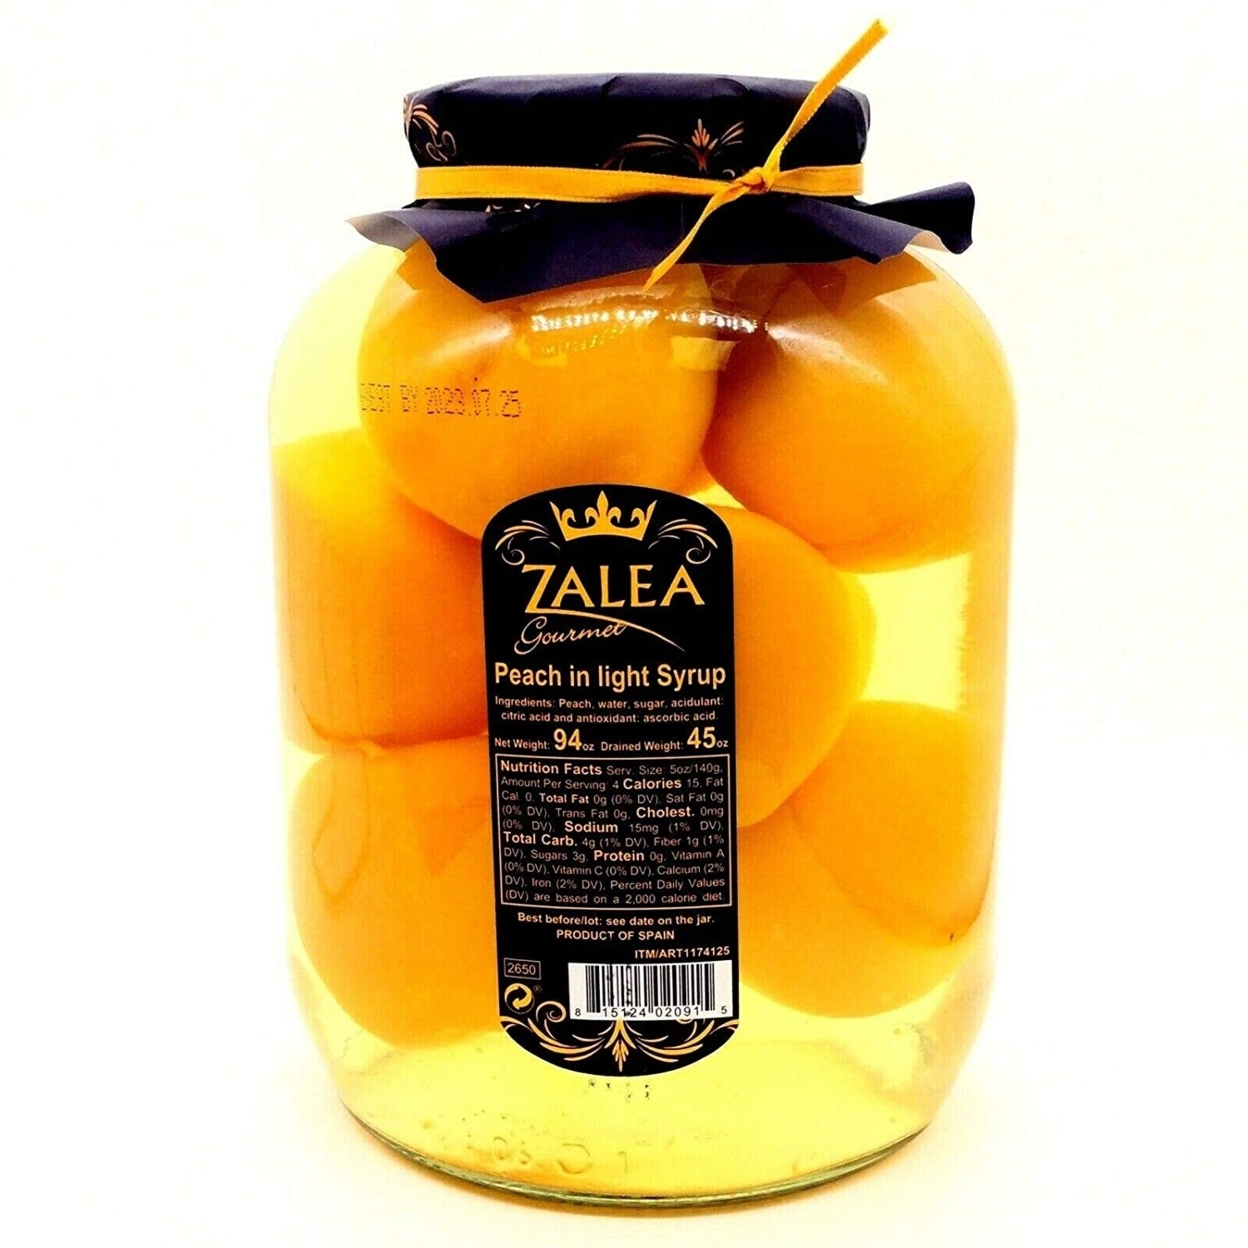 Zalea Gourmet Whole Peaches In Light Syrup, 94 Ounce Jar